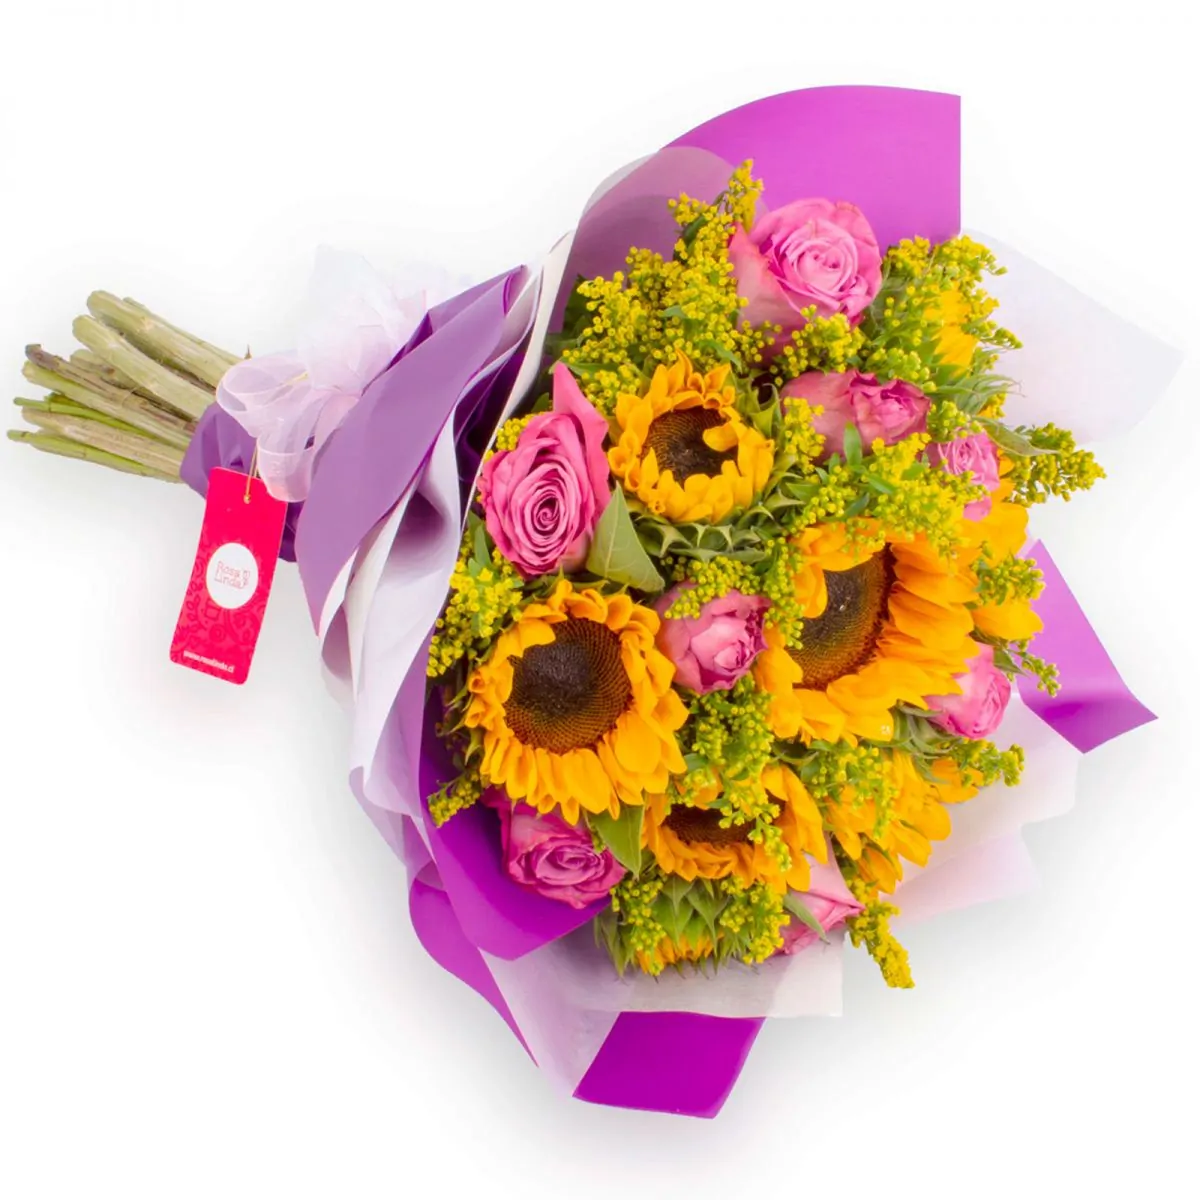 Foto principal Ramo girasoles y rosas - Ramo de girasoles, rosas ecuatorianas lilas y solidago